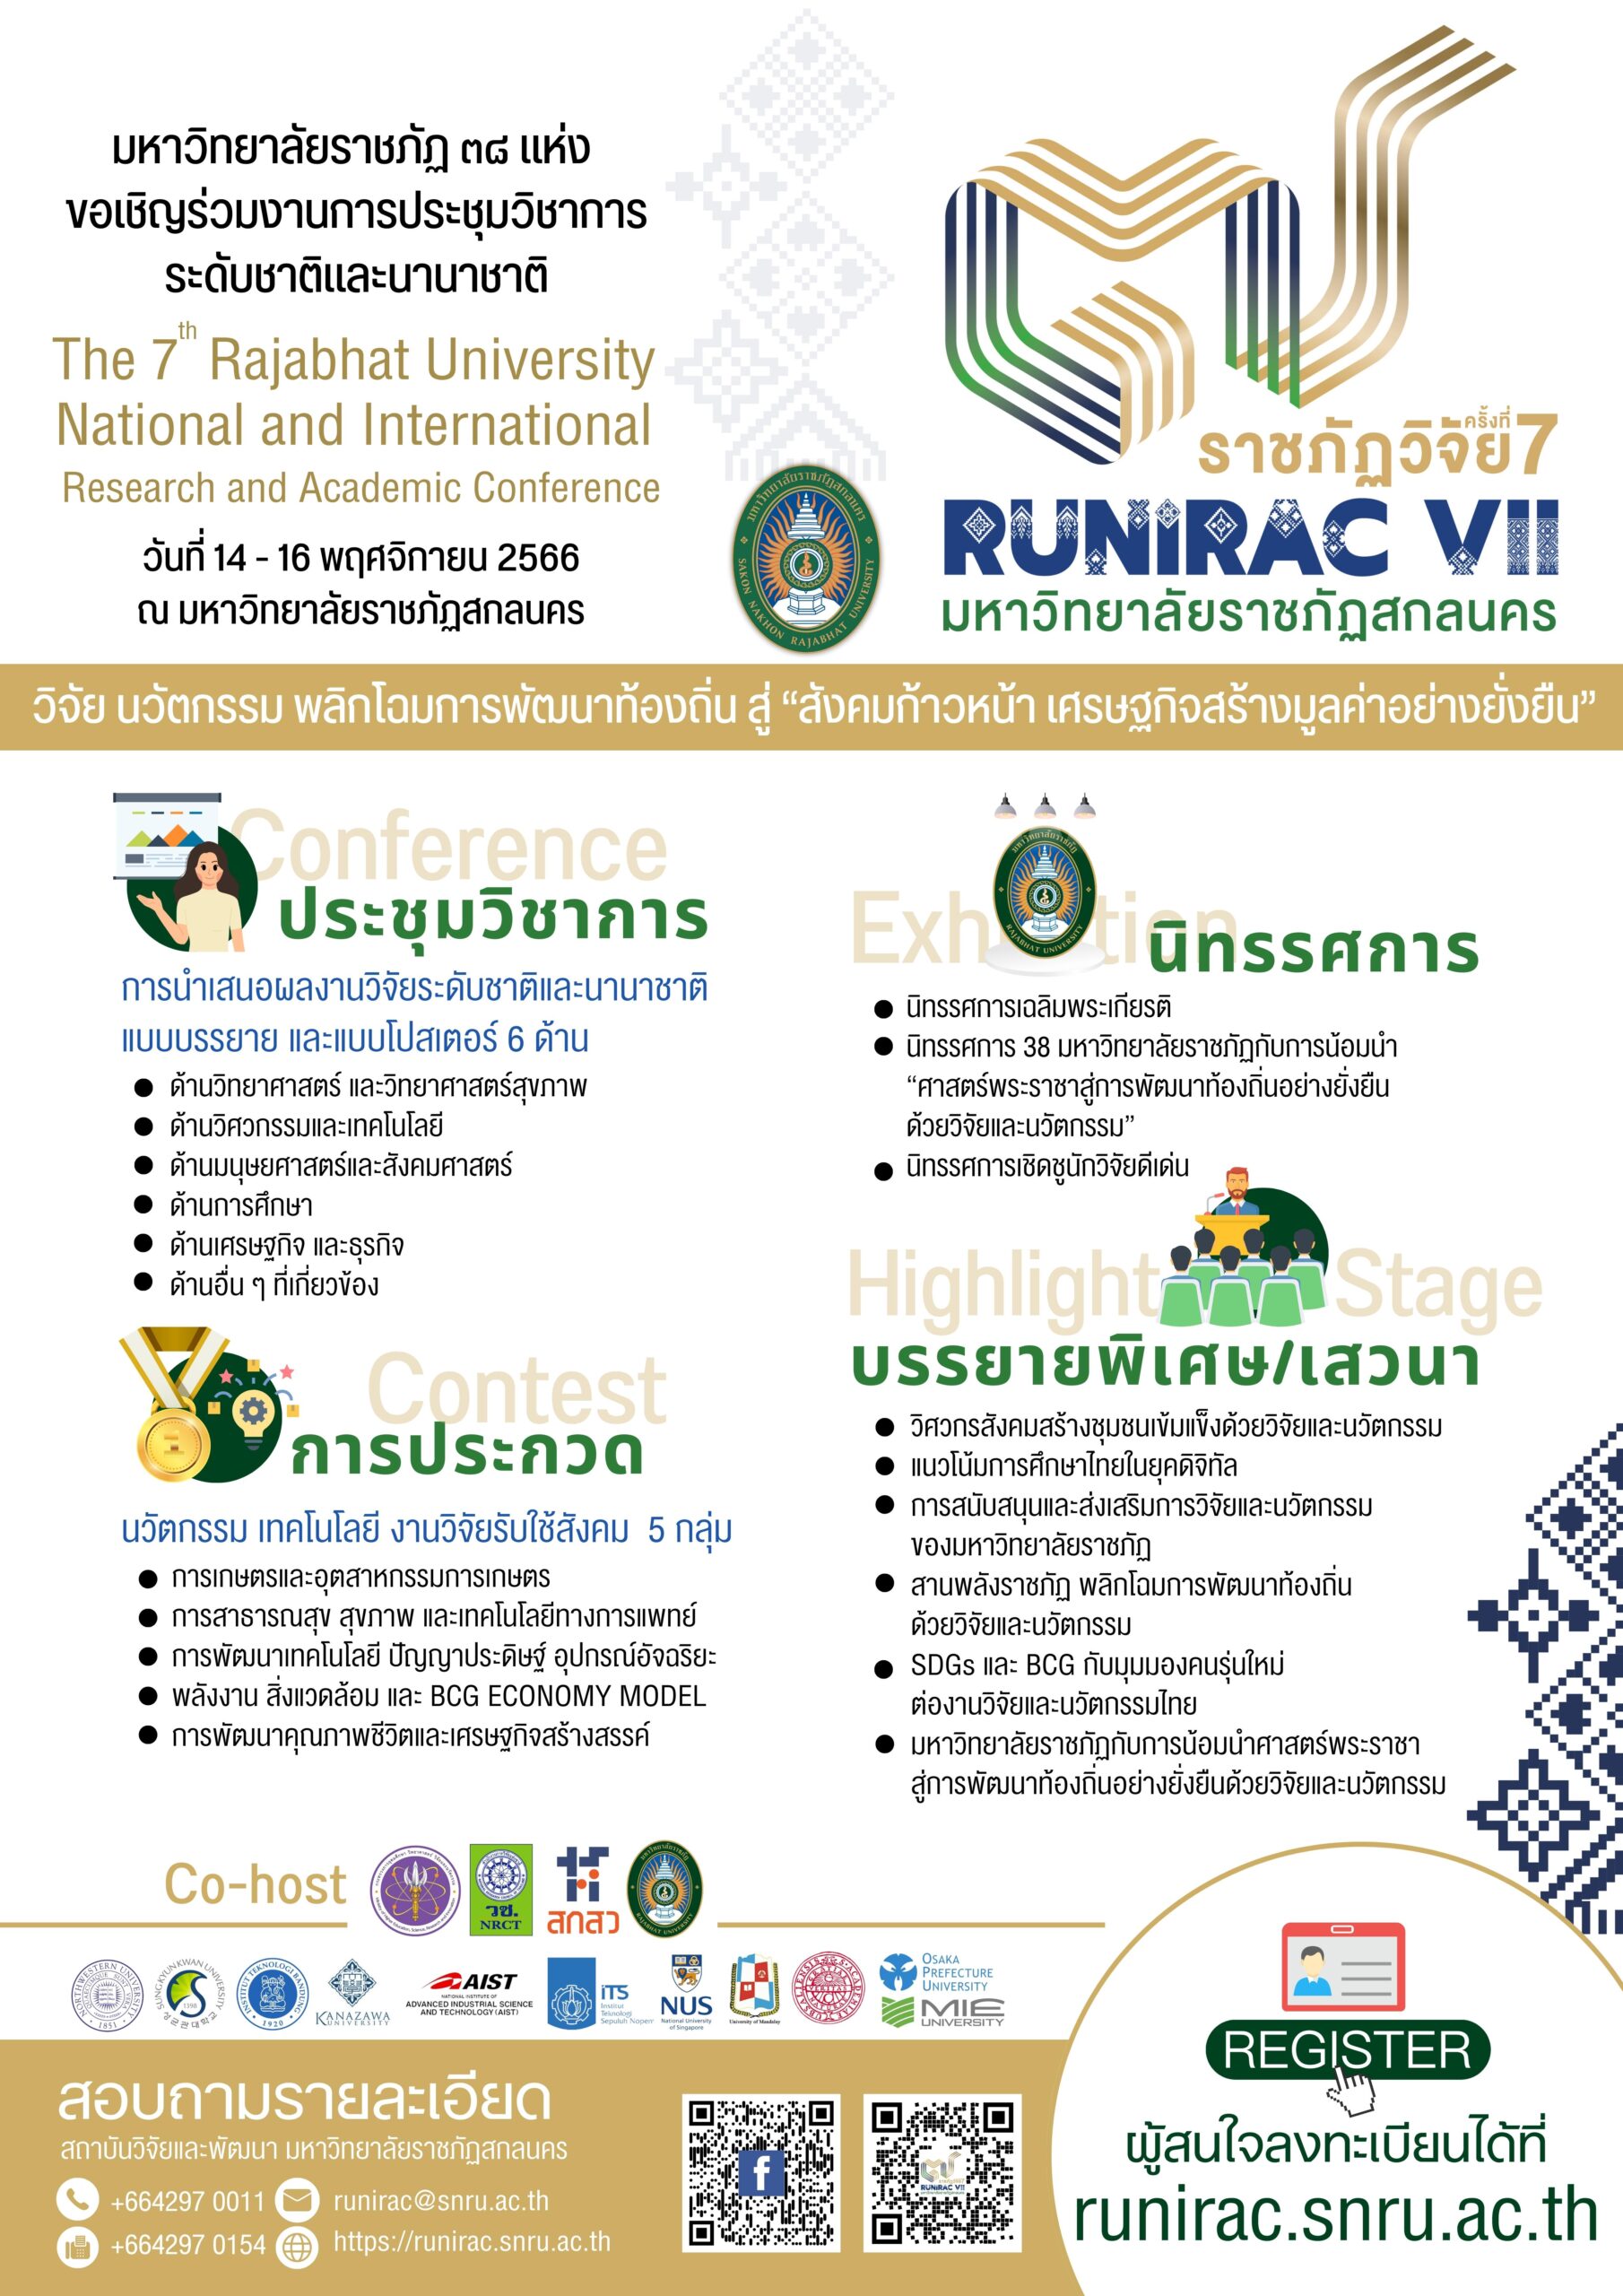 มหาวิทยาลัยราชภัฏ 38 แห่ง ขอเชิญร่วมงานการประชุมวิชาการ ระดับชาติและนานาชาติ “ราชภัฏวิจัย ครั้งที่ 7” The 7th Rajabhat University National and International Research and Academic Conference